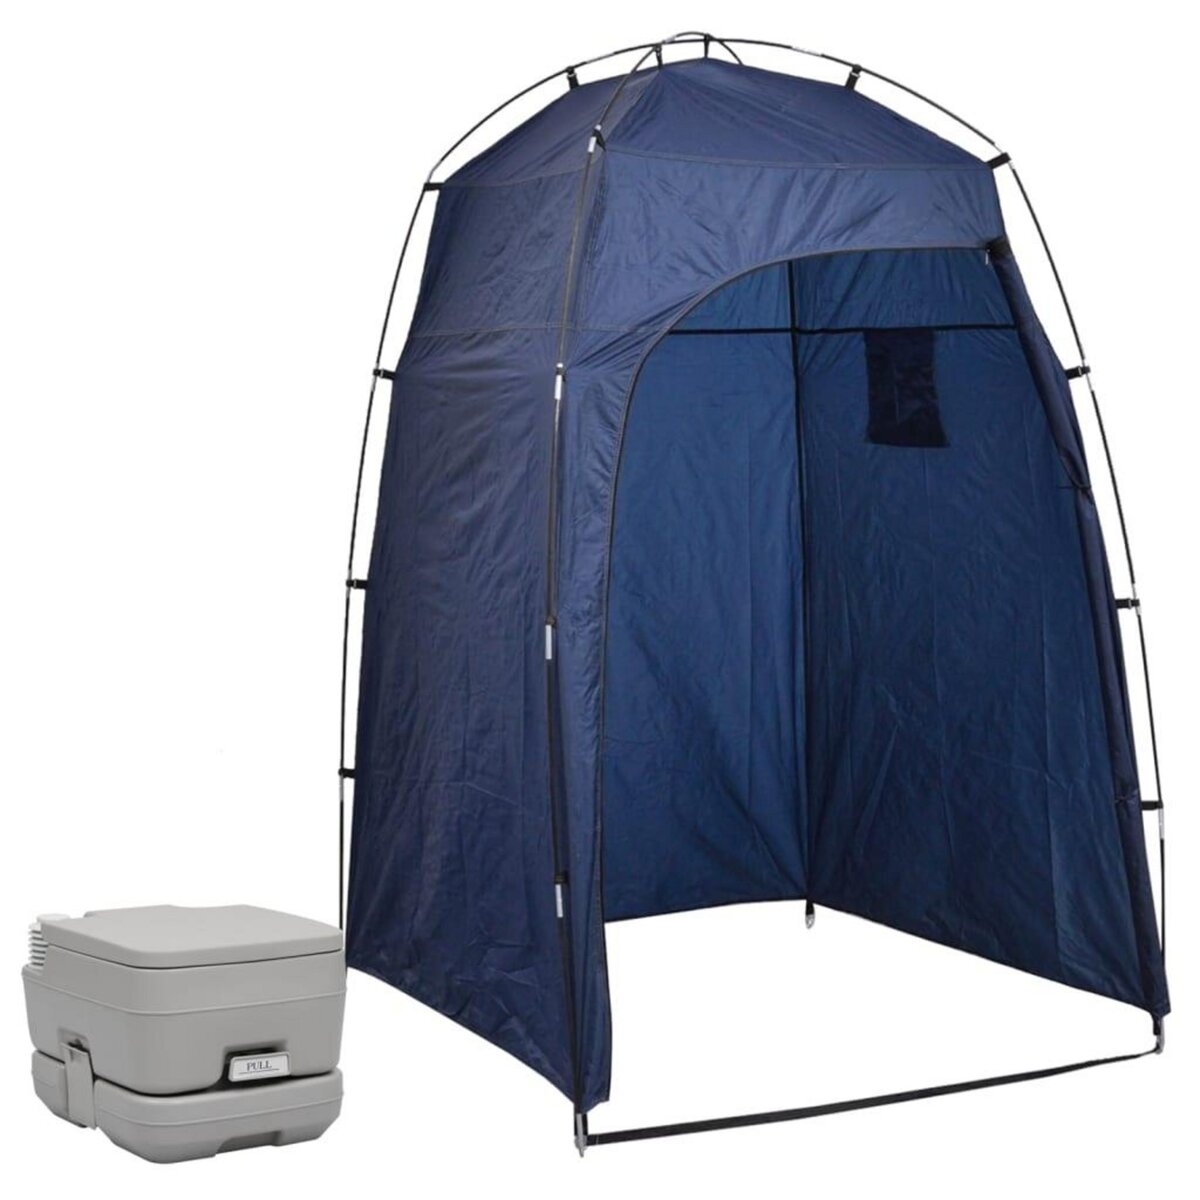 VIDAXL Toilette portable de camping avec tente 10+10 L pas cher 